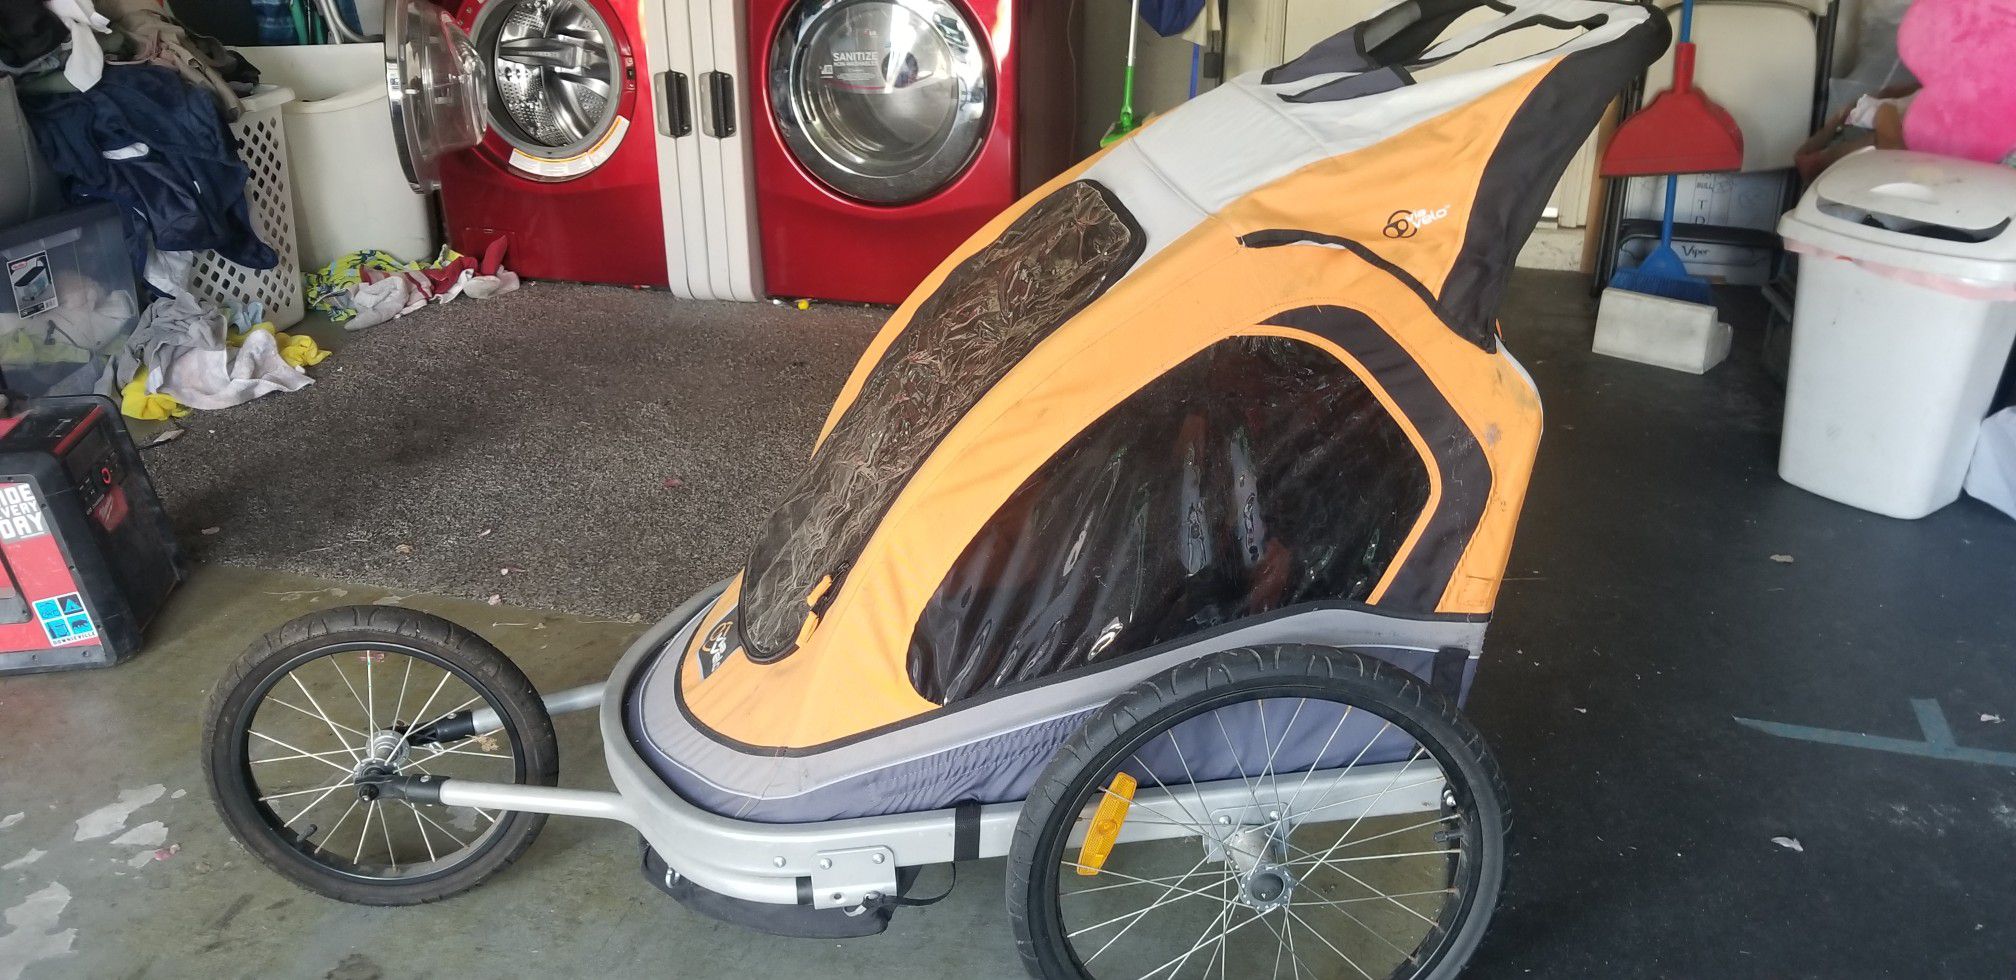 Bike trailer and jogging stroller